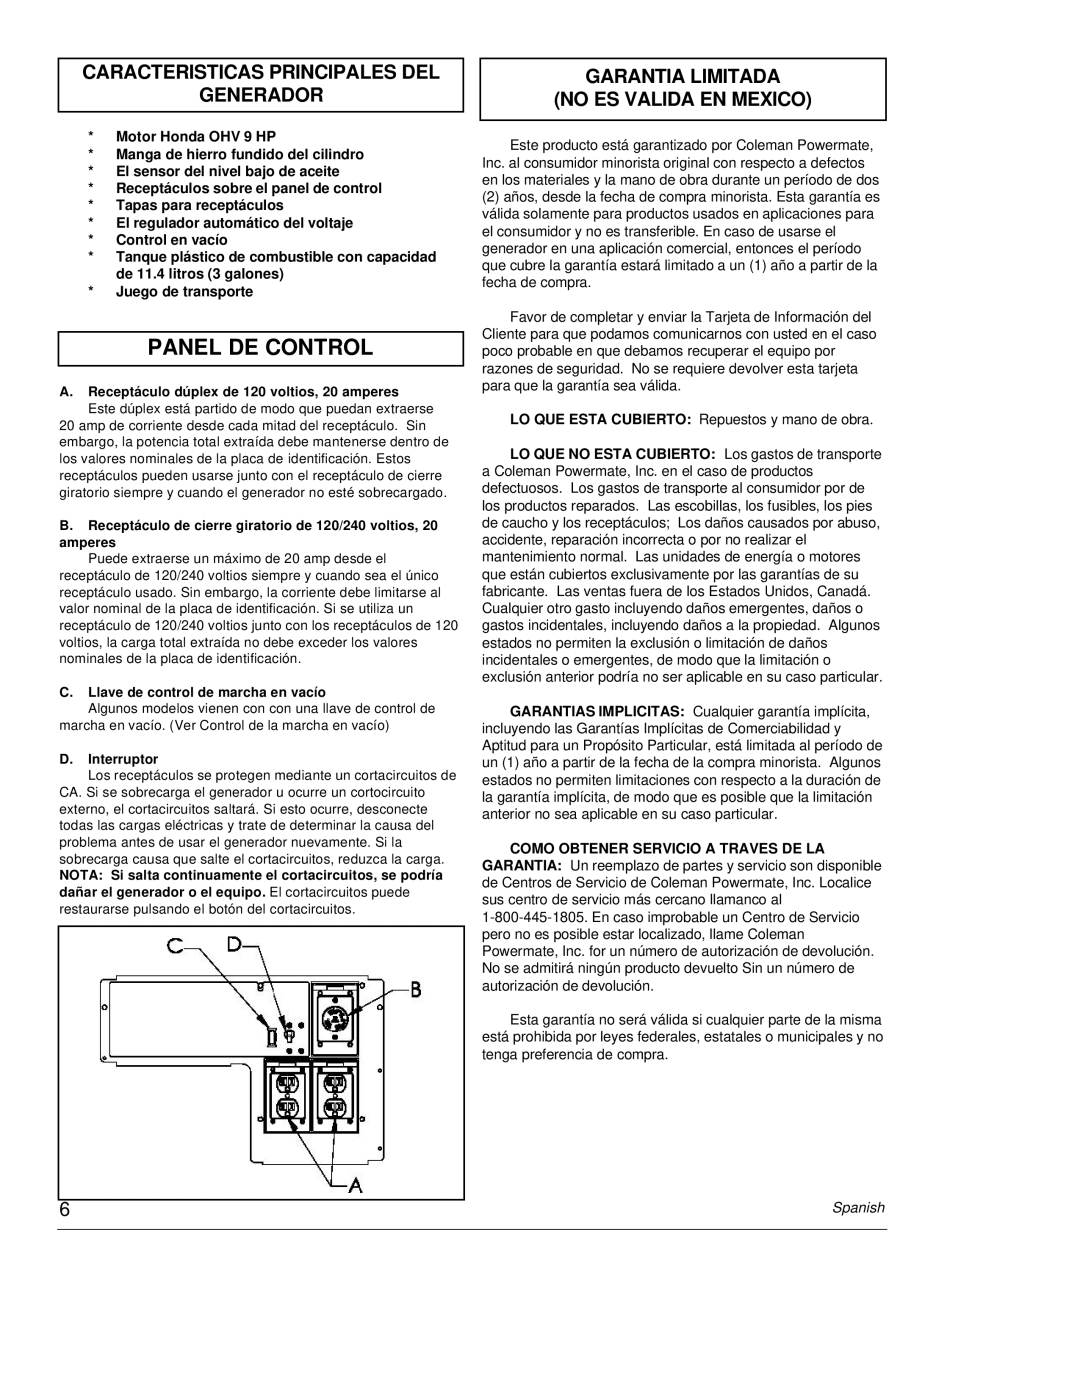 Powermate PC0464500 Panel De Control, Caracteristicas Principales Del Generador, Garantia Limitada No Es Valida En Mexico 